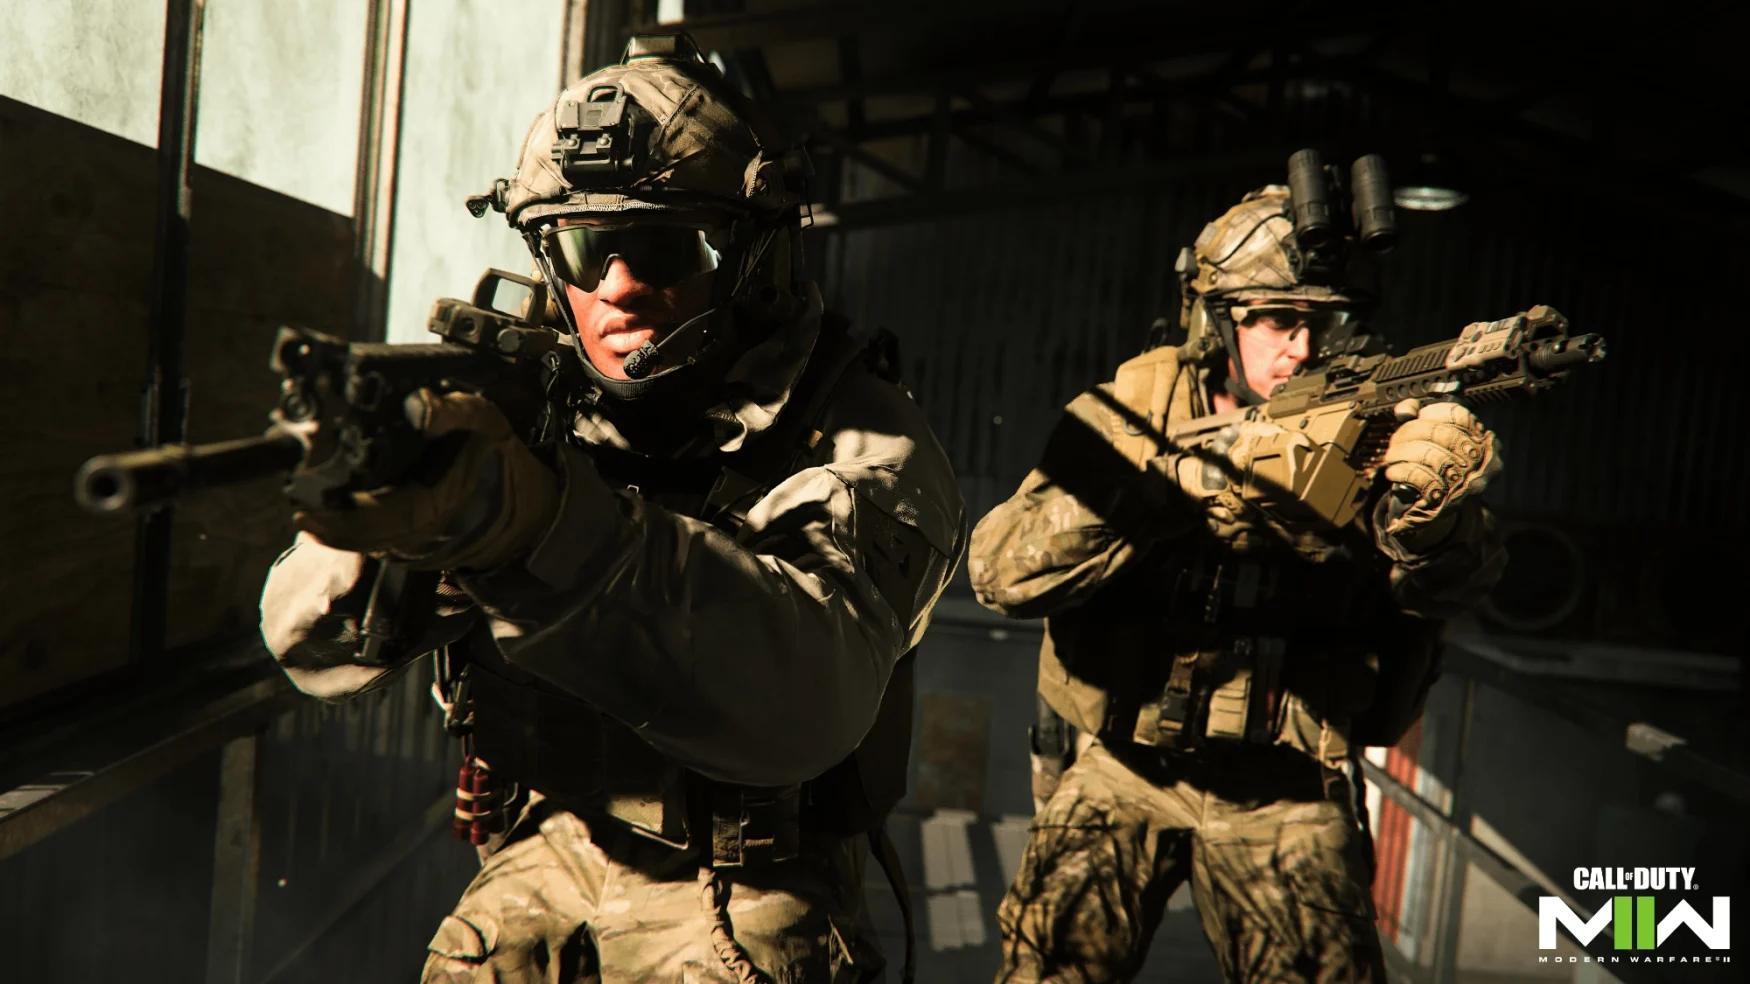 Captura de pantalla de Call of Duty: Modern Warfare, que muestra a dos soldados apuntando sus rifles de combate a la izquierda y derecha de la cámara